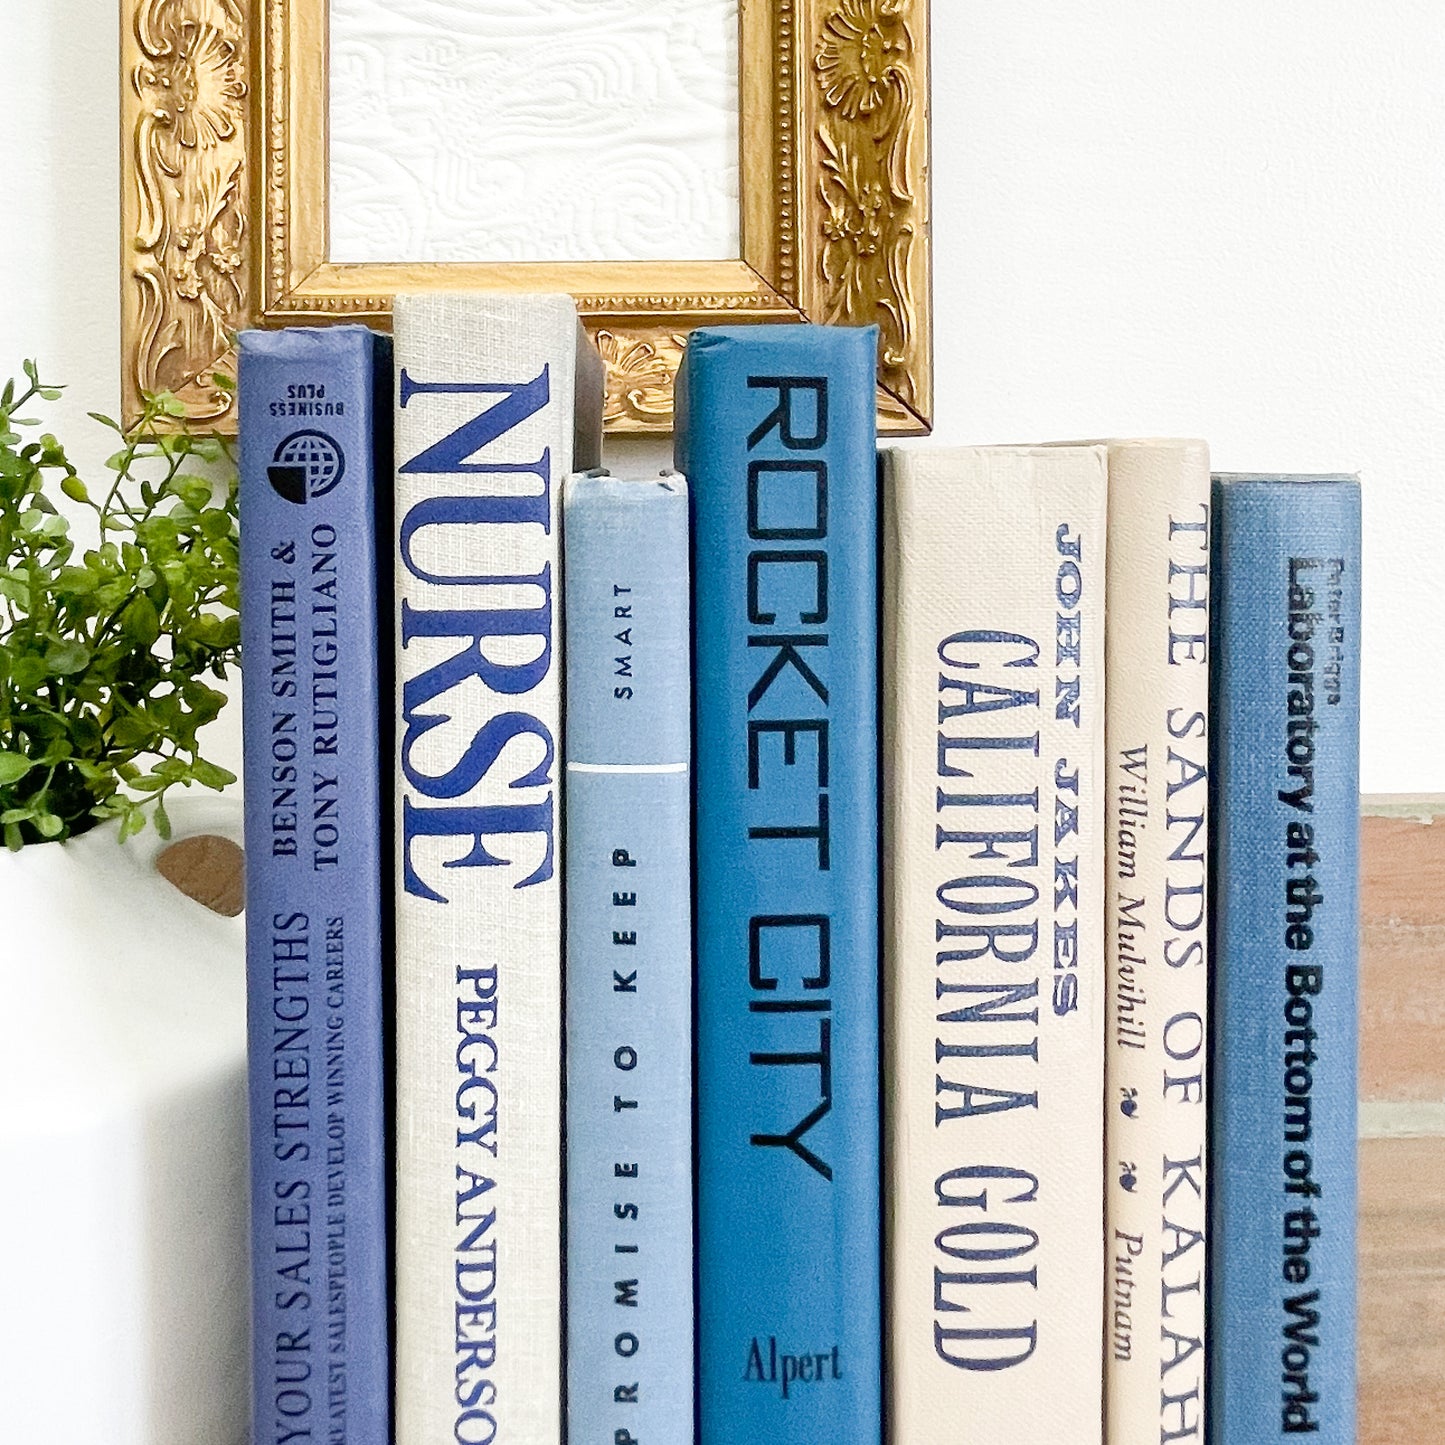 Blue and White Books for Shelf Decor